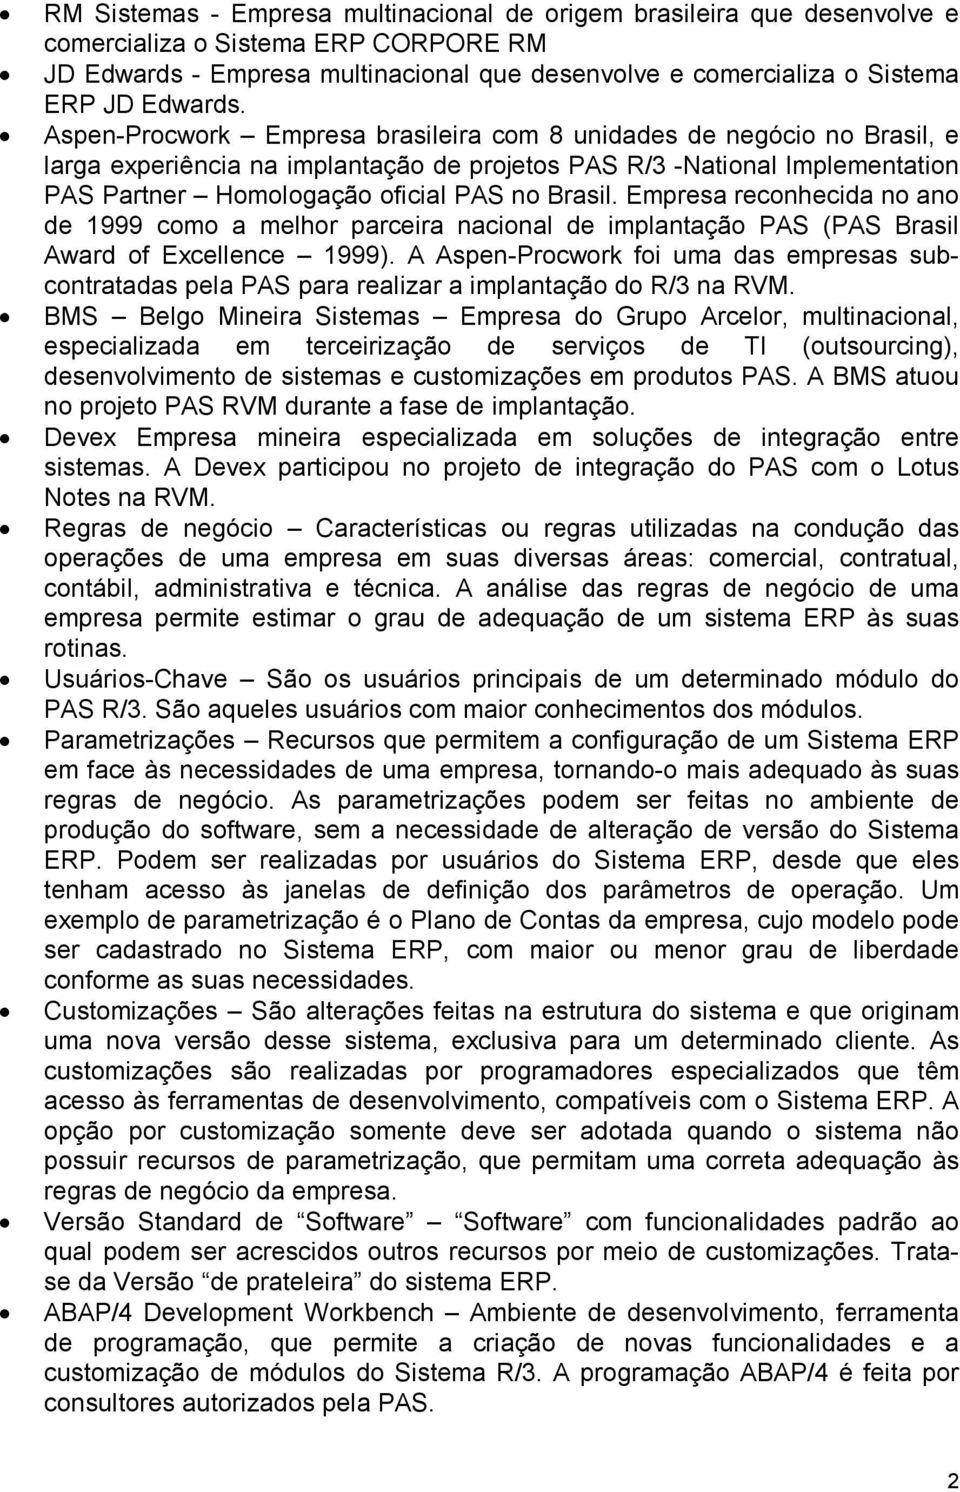 Aspen-Procwork Empresa brasileira com 8 unidades de negócio no Brasil, e larga experiência na implantação de projetos PAS R/3 -National Implementation PAS Partner Homologação oficial PAS no Brasil.